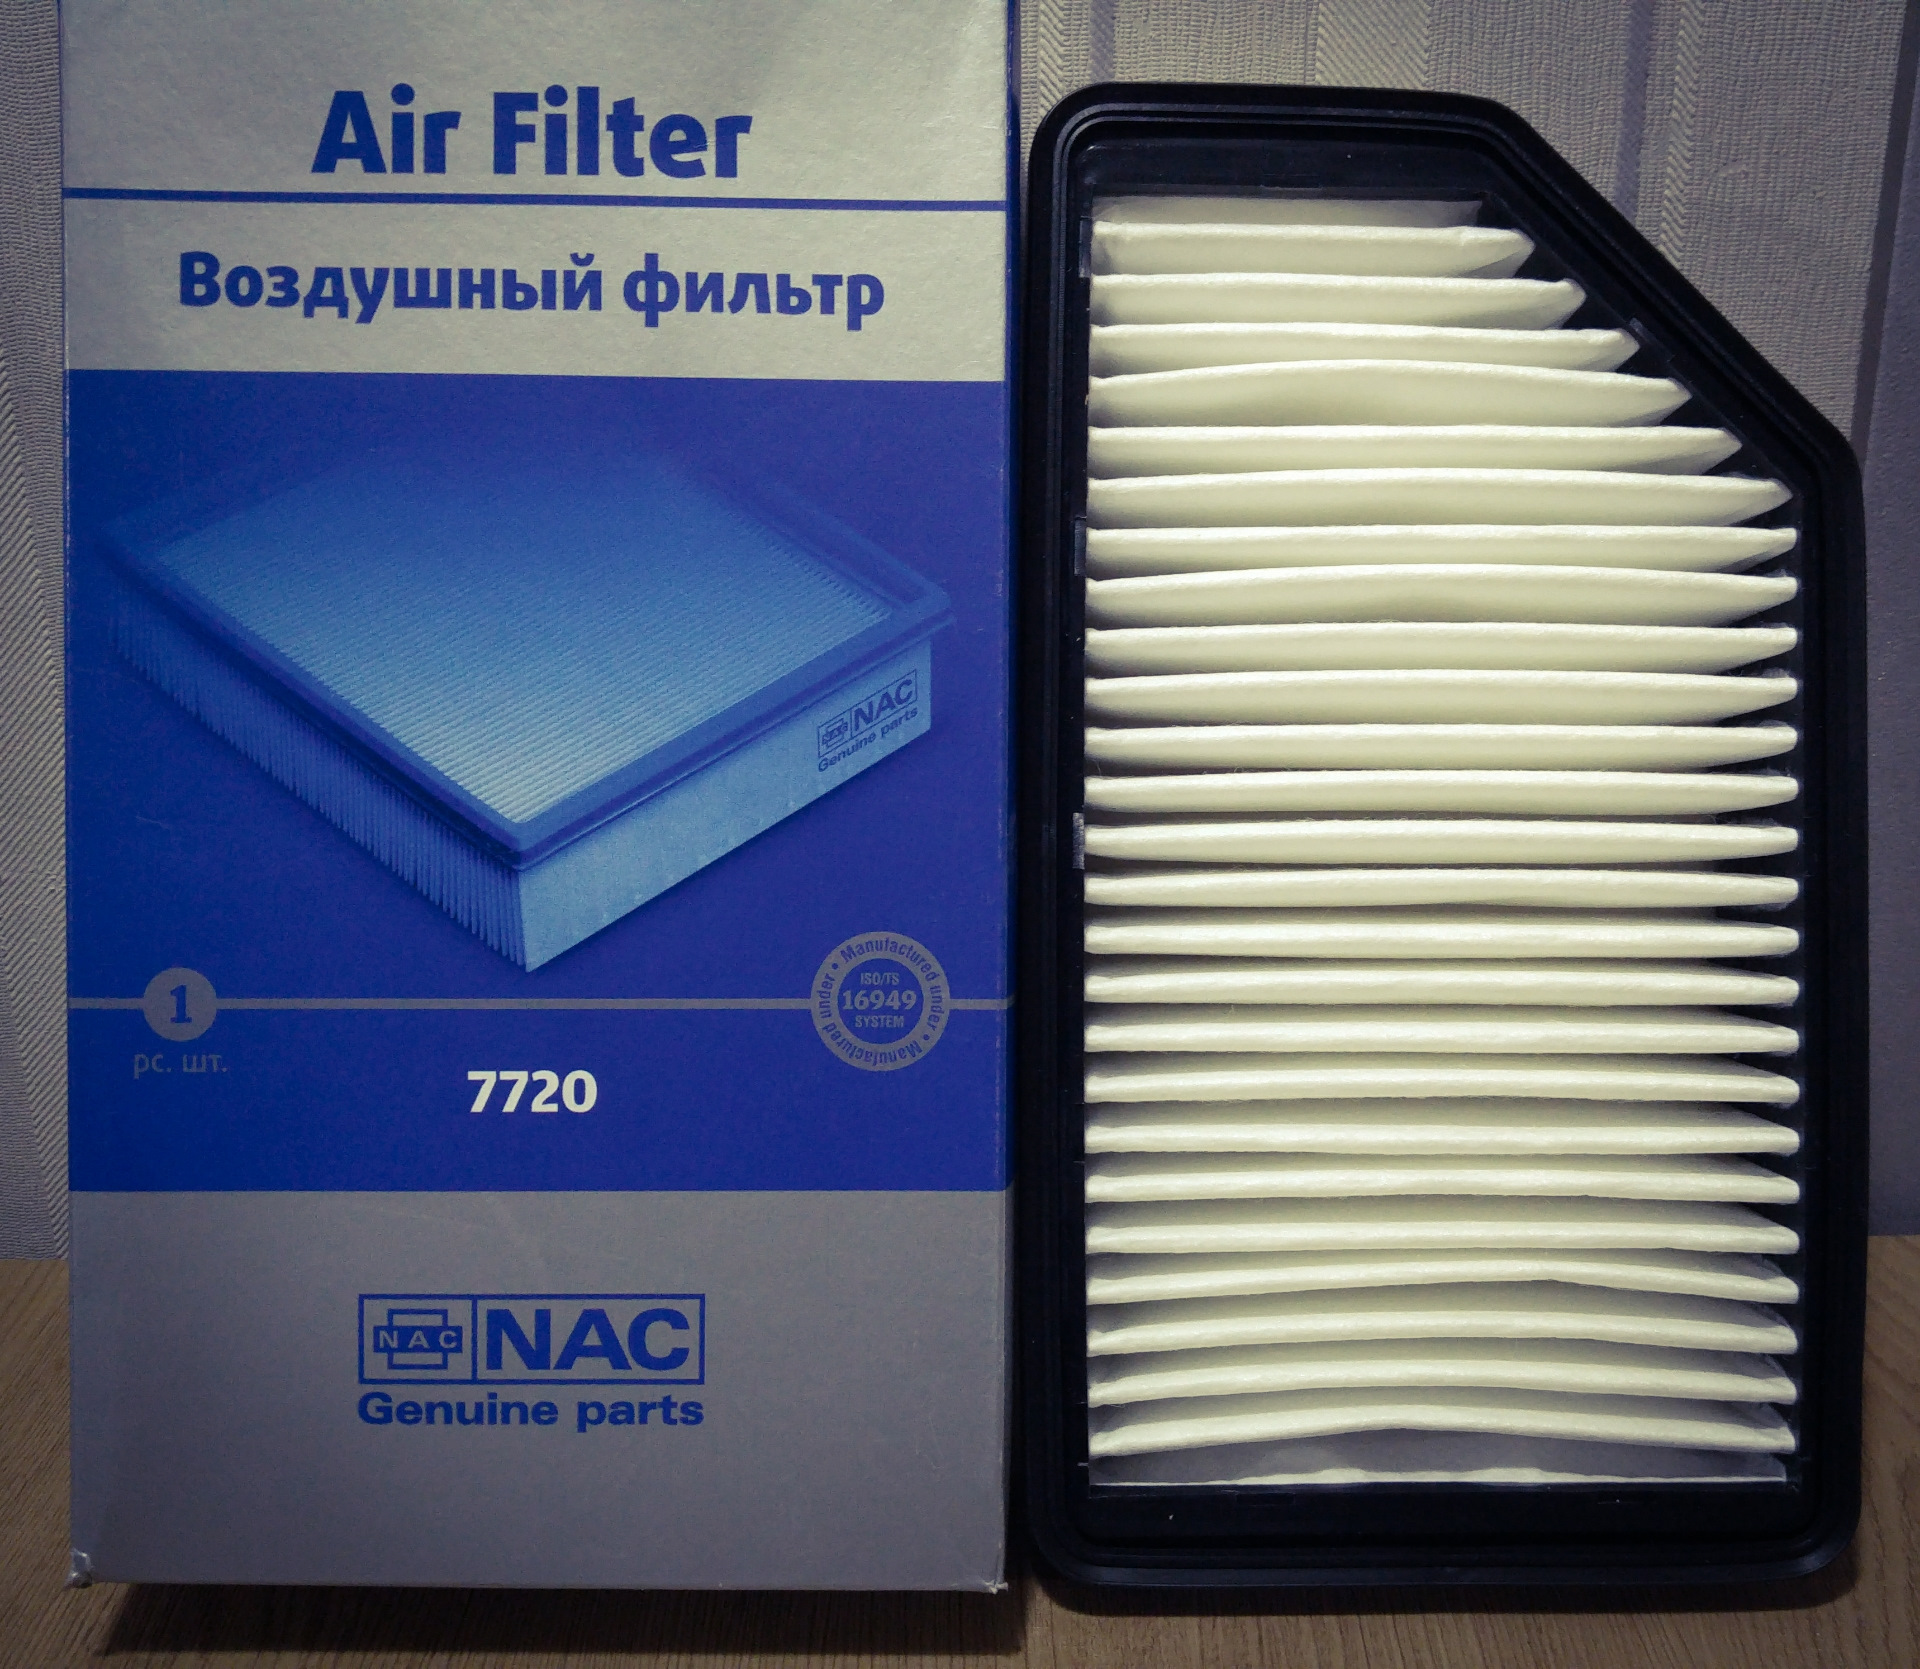 Фильтр воздушный солярис 1. Фильтр воздушный NAC 7720. Фильтр воздушный 7750 NAC. Фильтр воздушный Солярис 2011 1.6. Воздушный фильтр Солярис 1.6 2015.